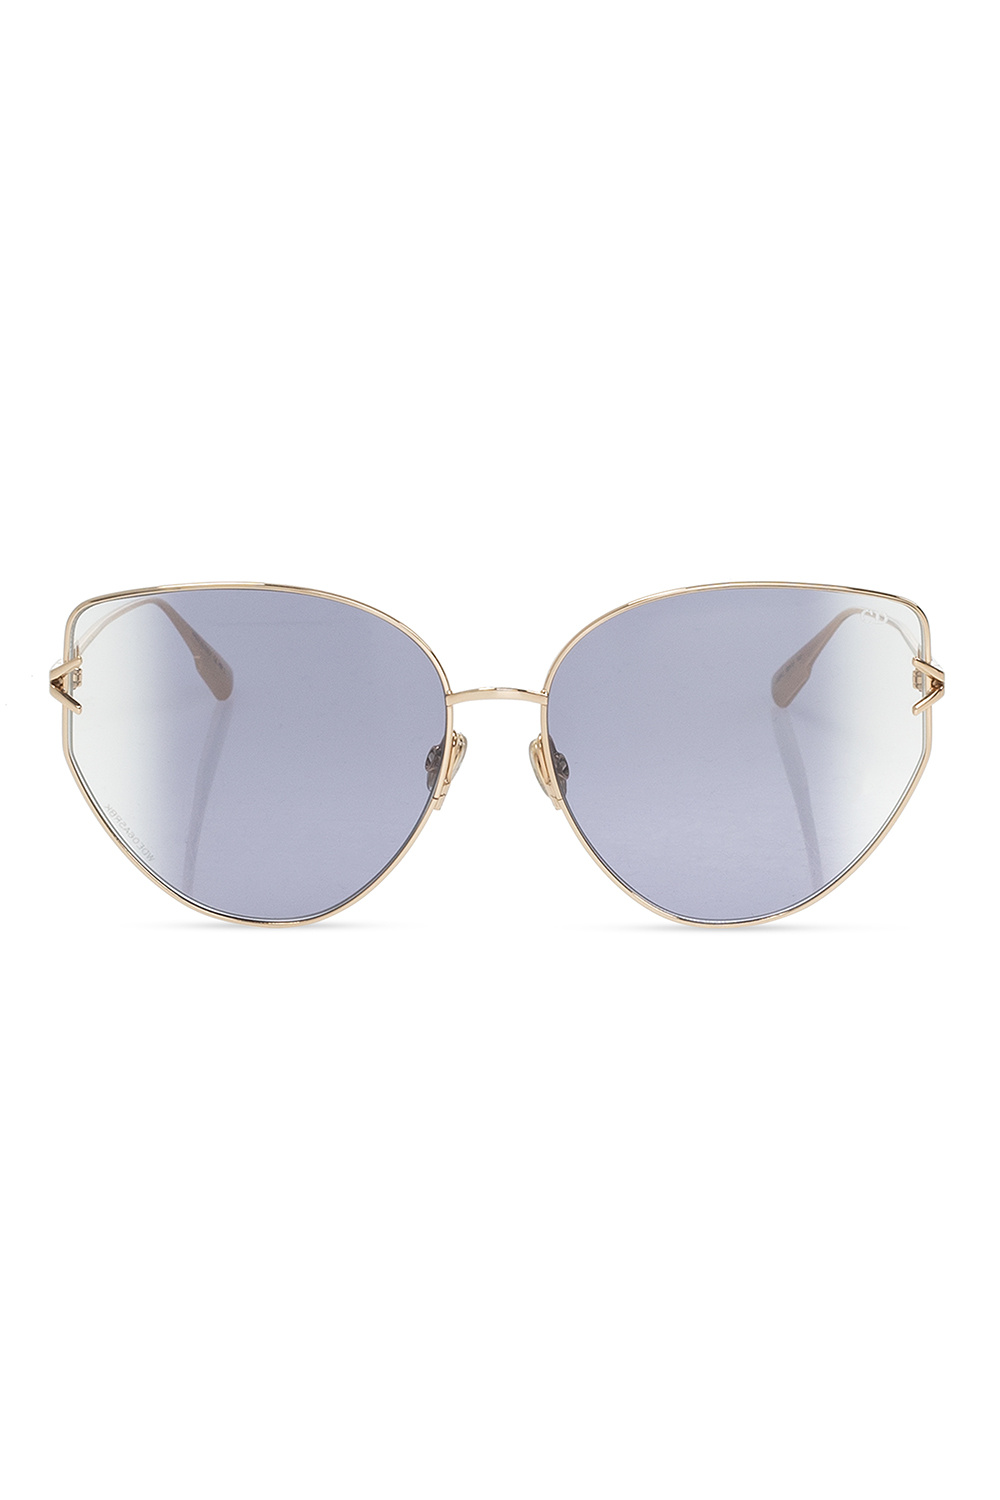 Dior ‘Gipsy 2’ Demi sunglasses